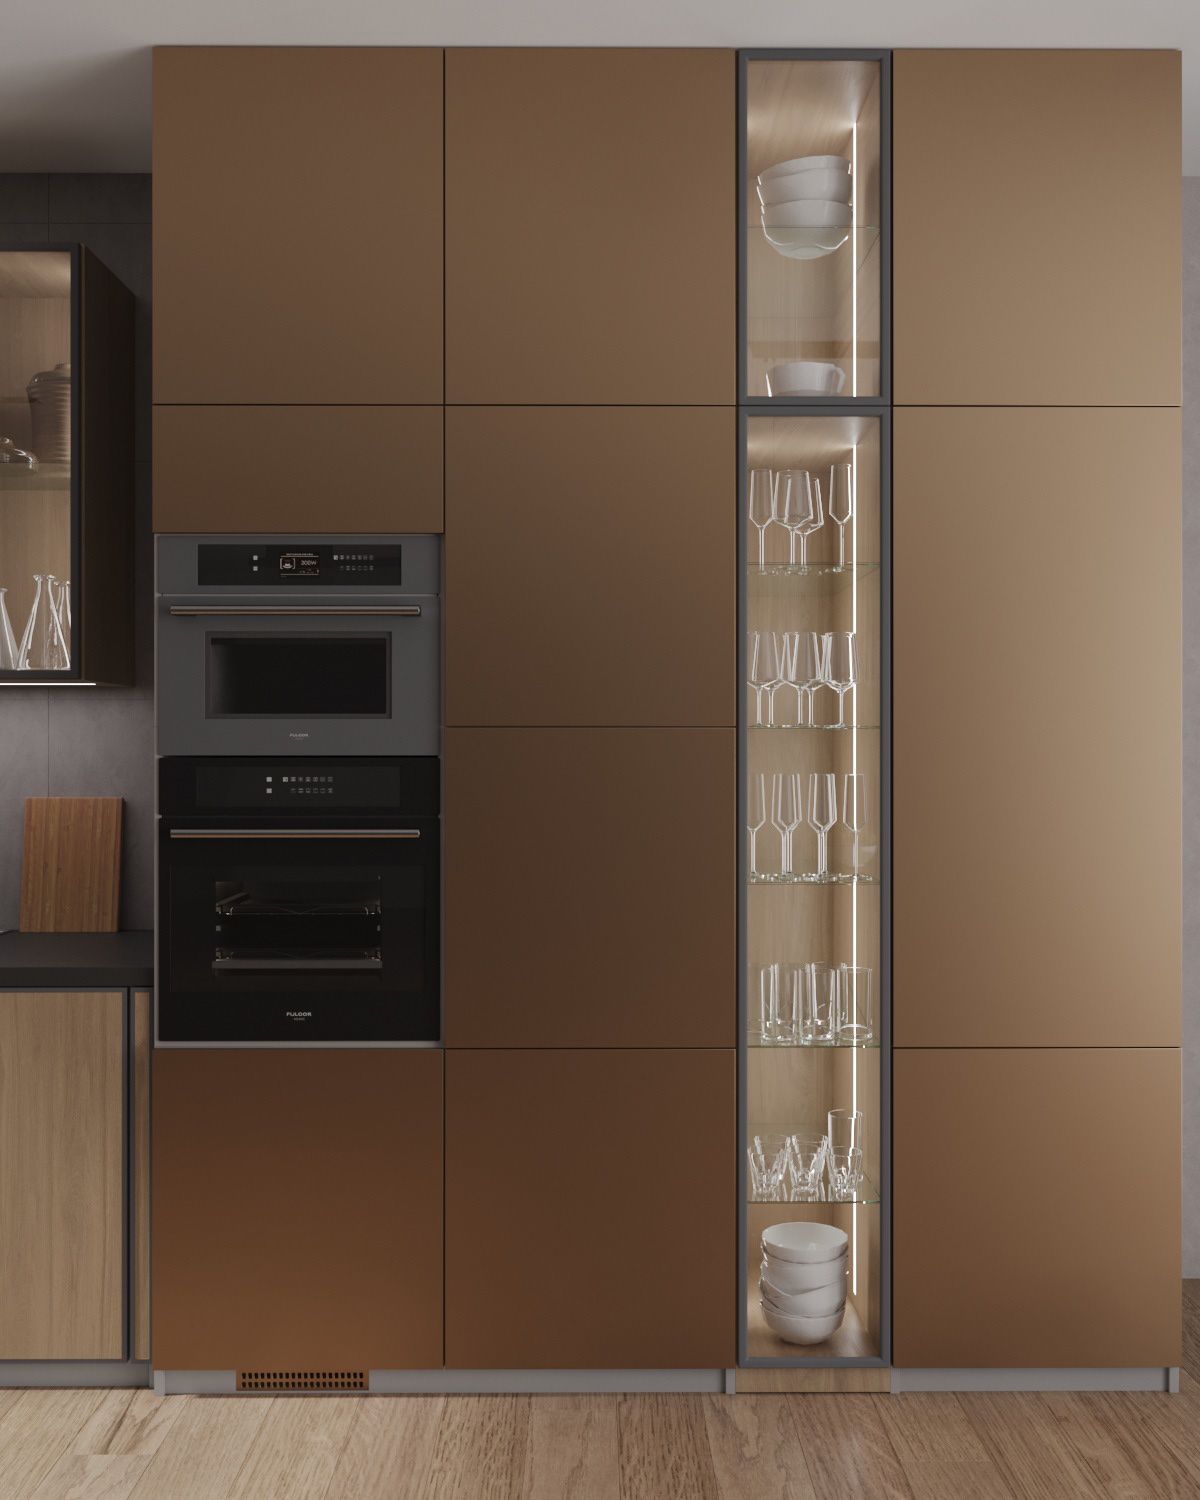 kitchen design disign disign interior дизайн интерьера Визуализация интерьера современный дизайн